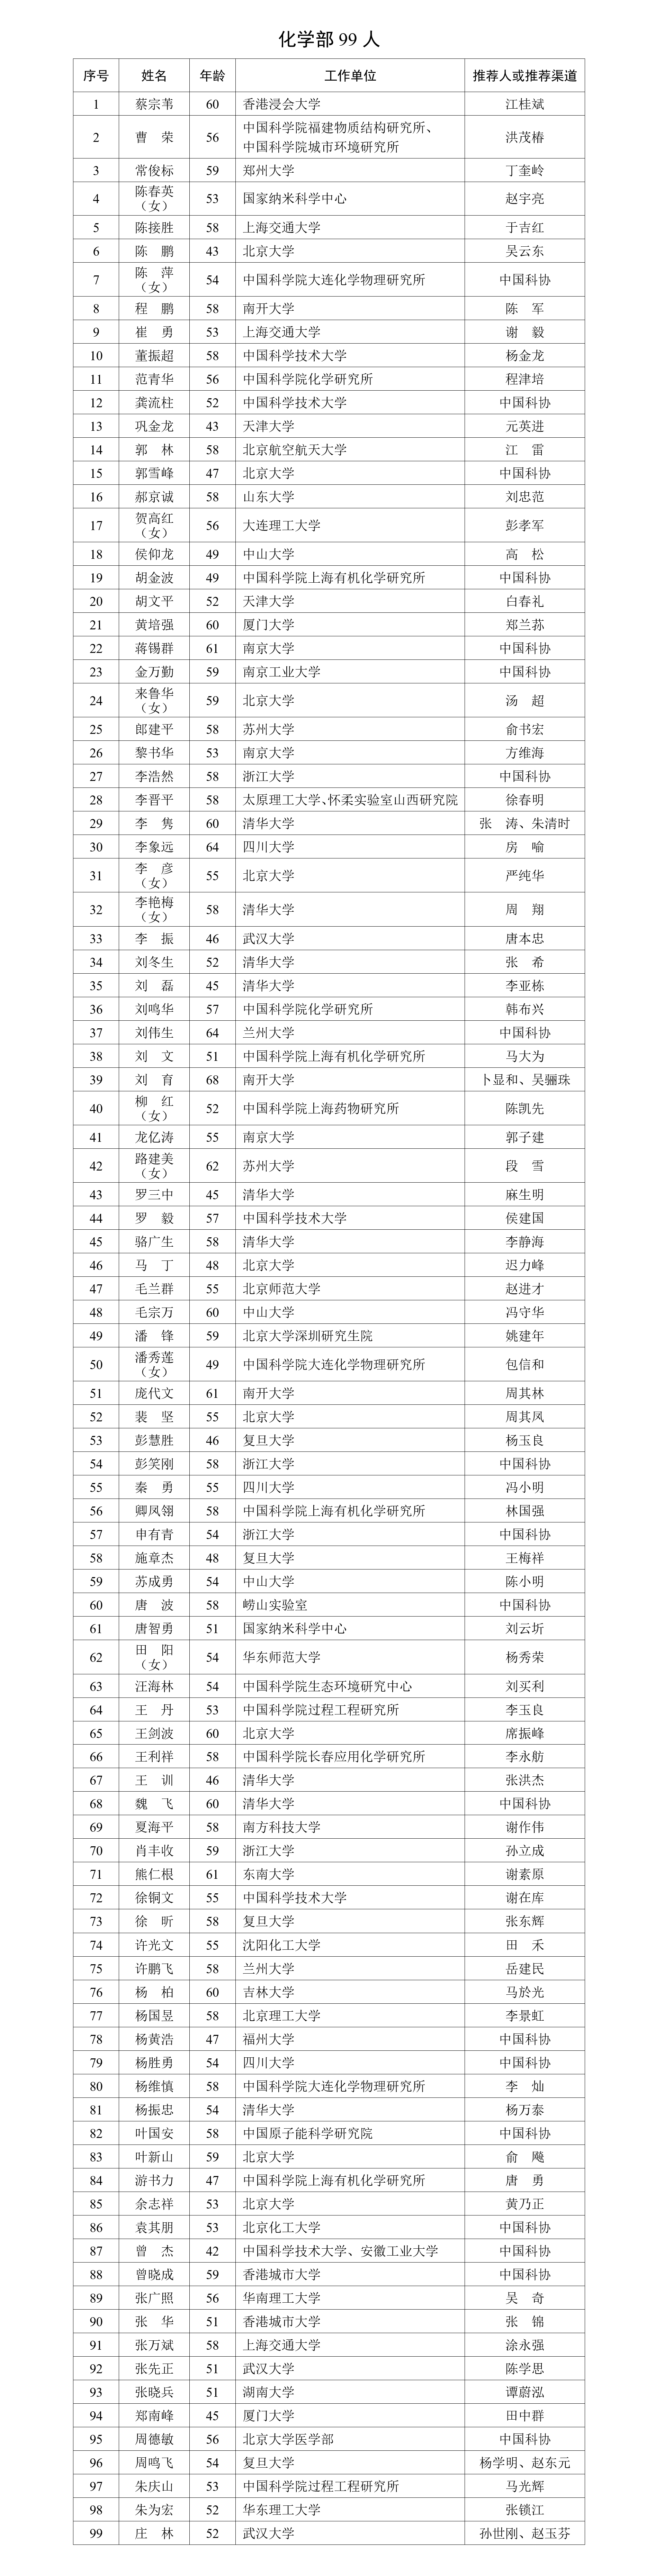 2023年中国科学院院士增选有效候选人名单公布